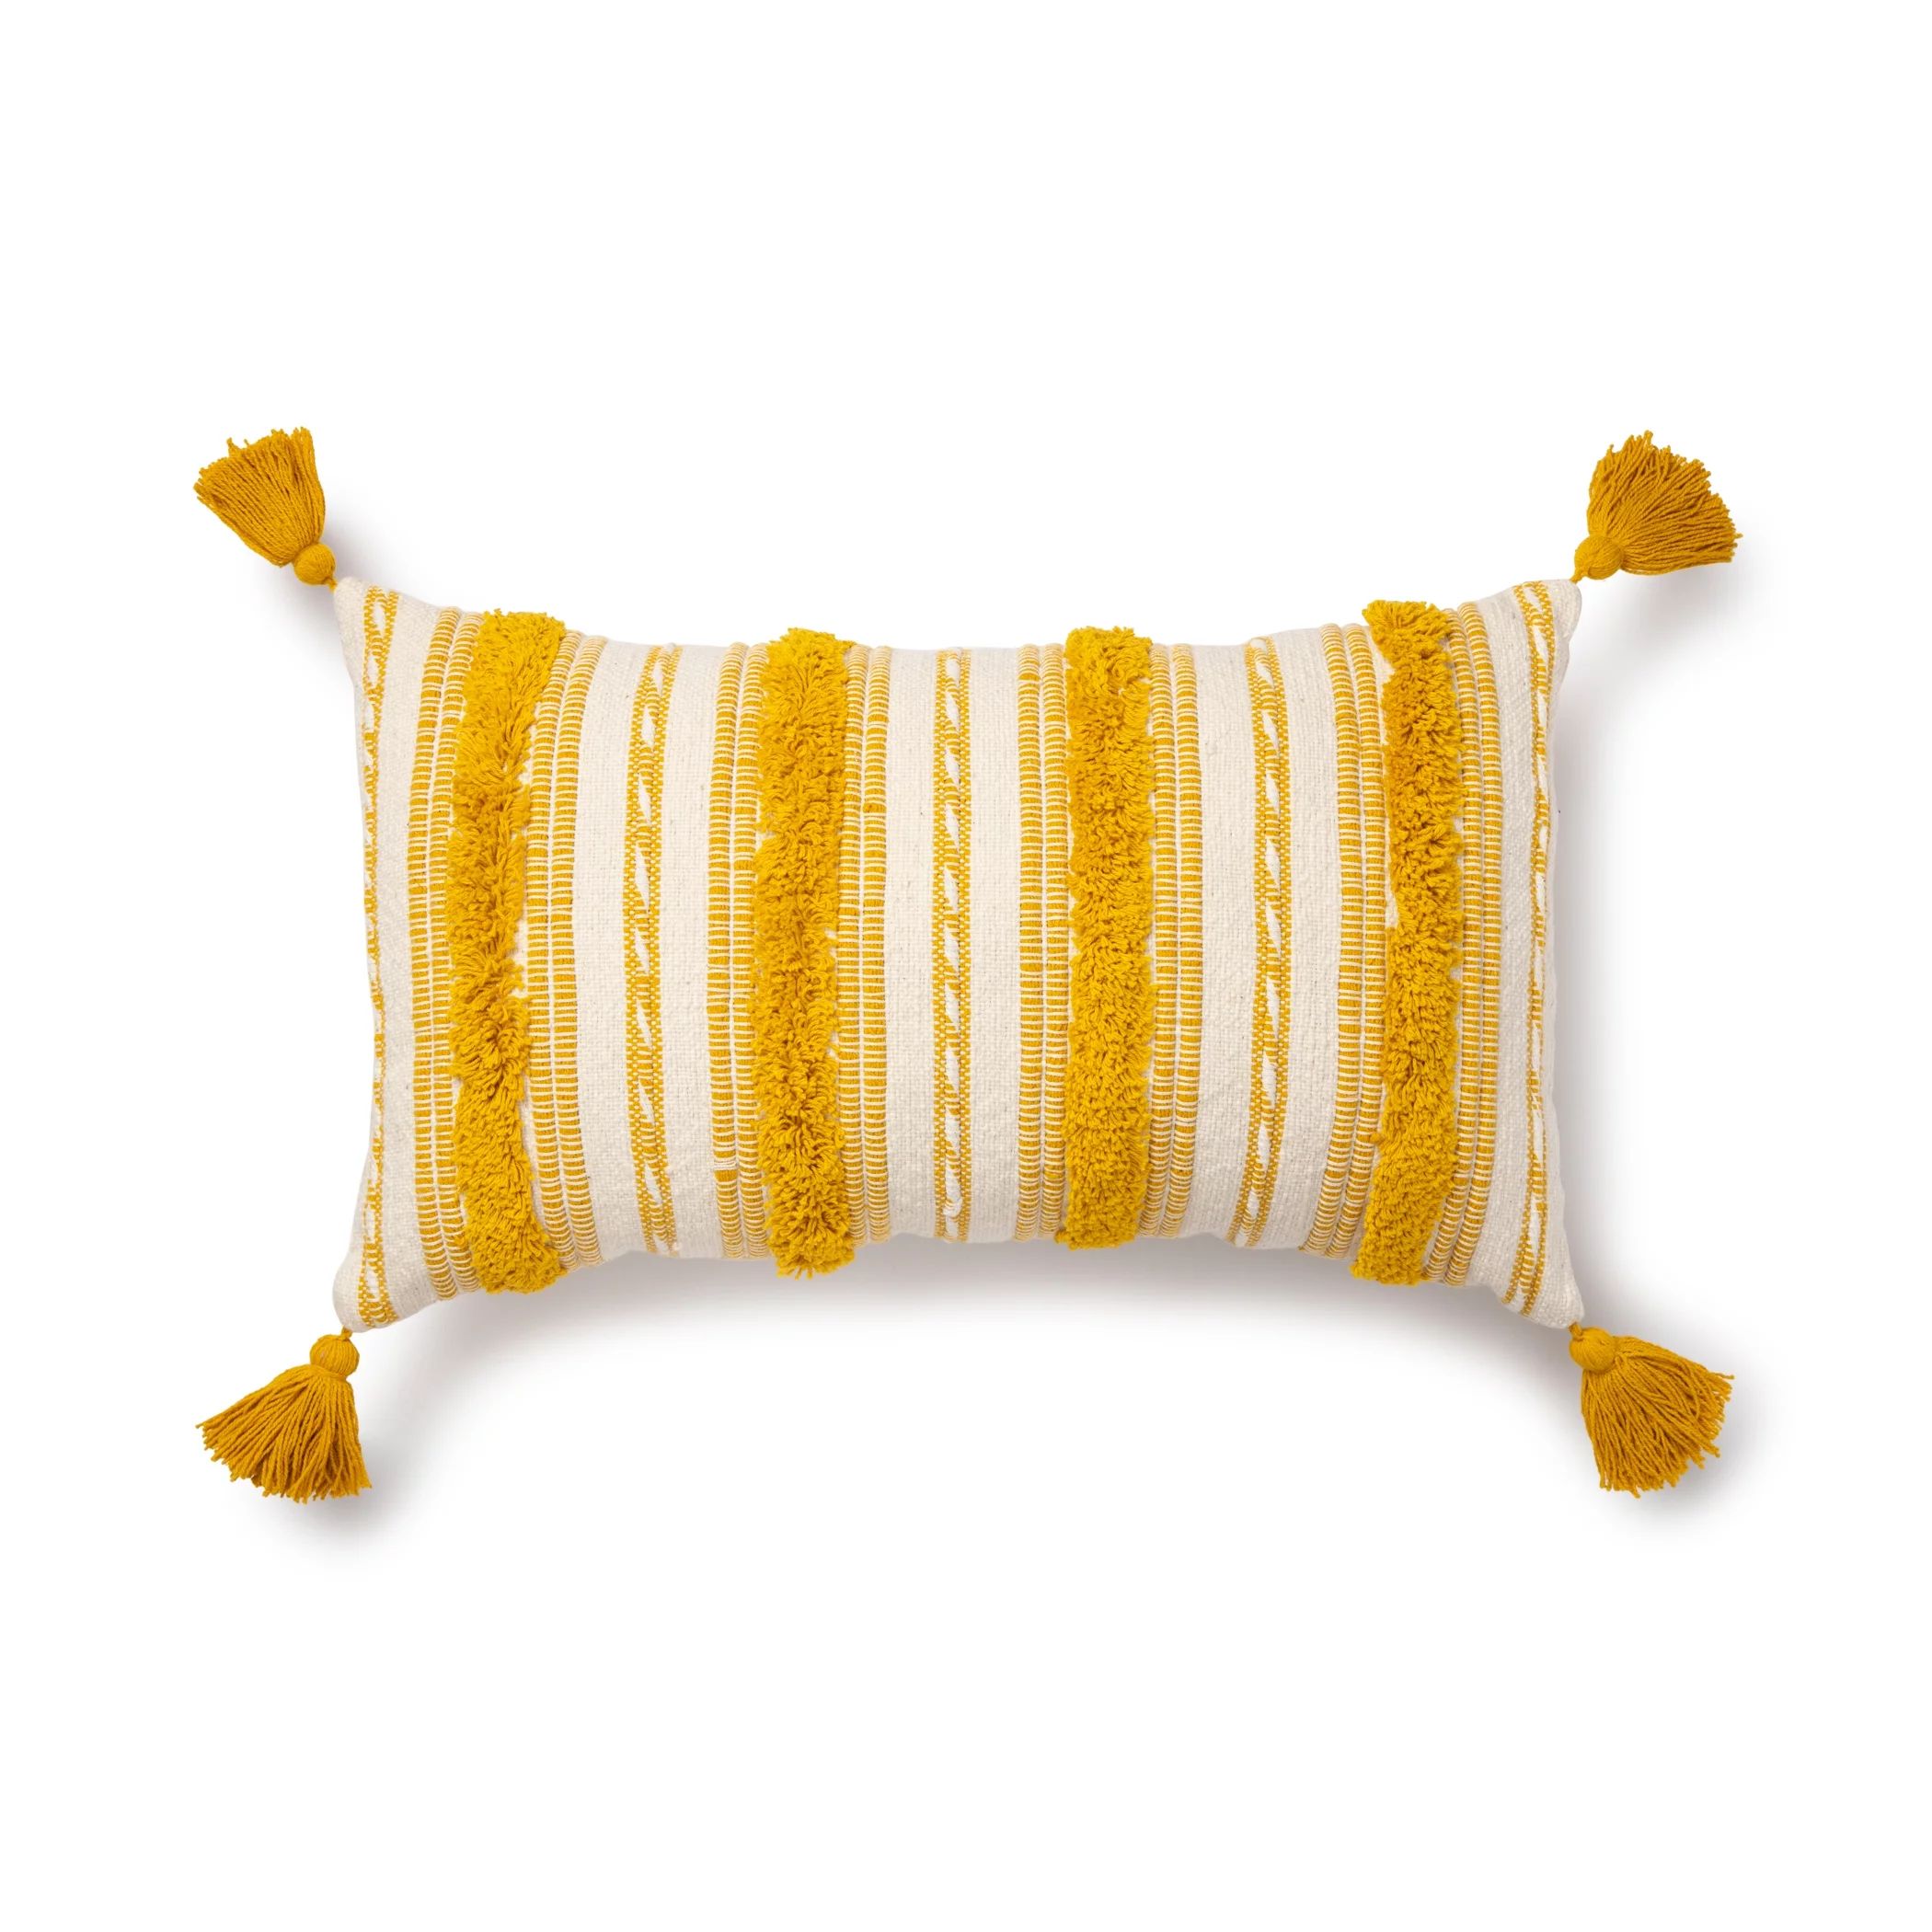 Better Homes & Gardens Woven Tufted Decorative Lumbar Pillow, 14" x 24", Yellow, Single Pillow | Walmart (US)